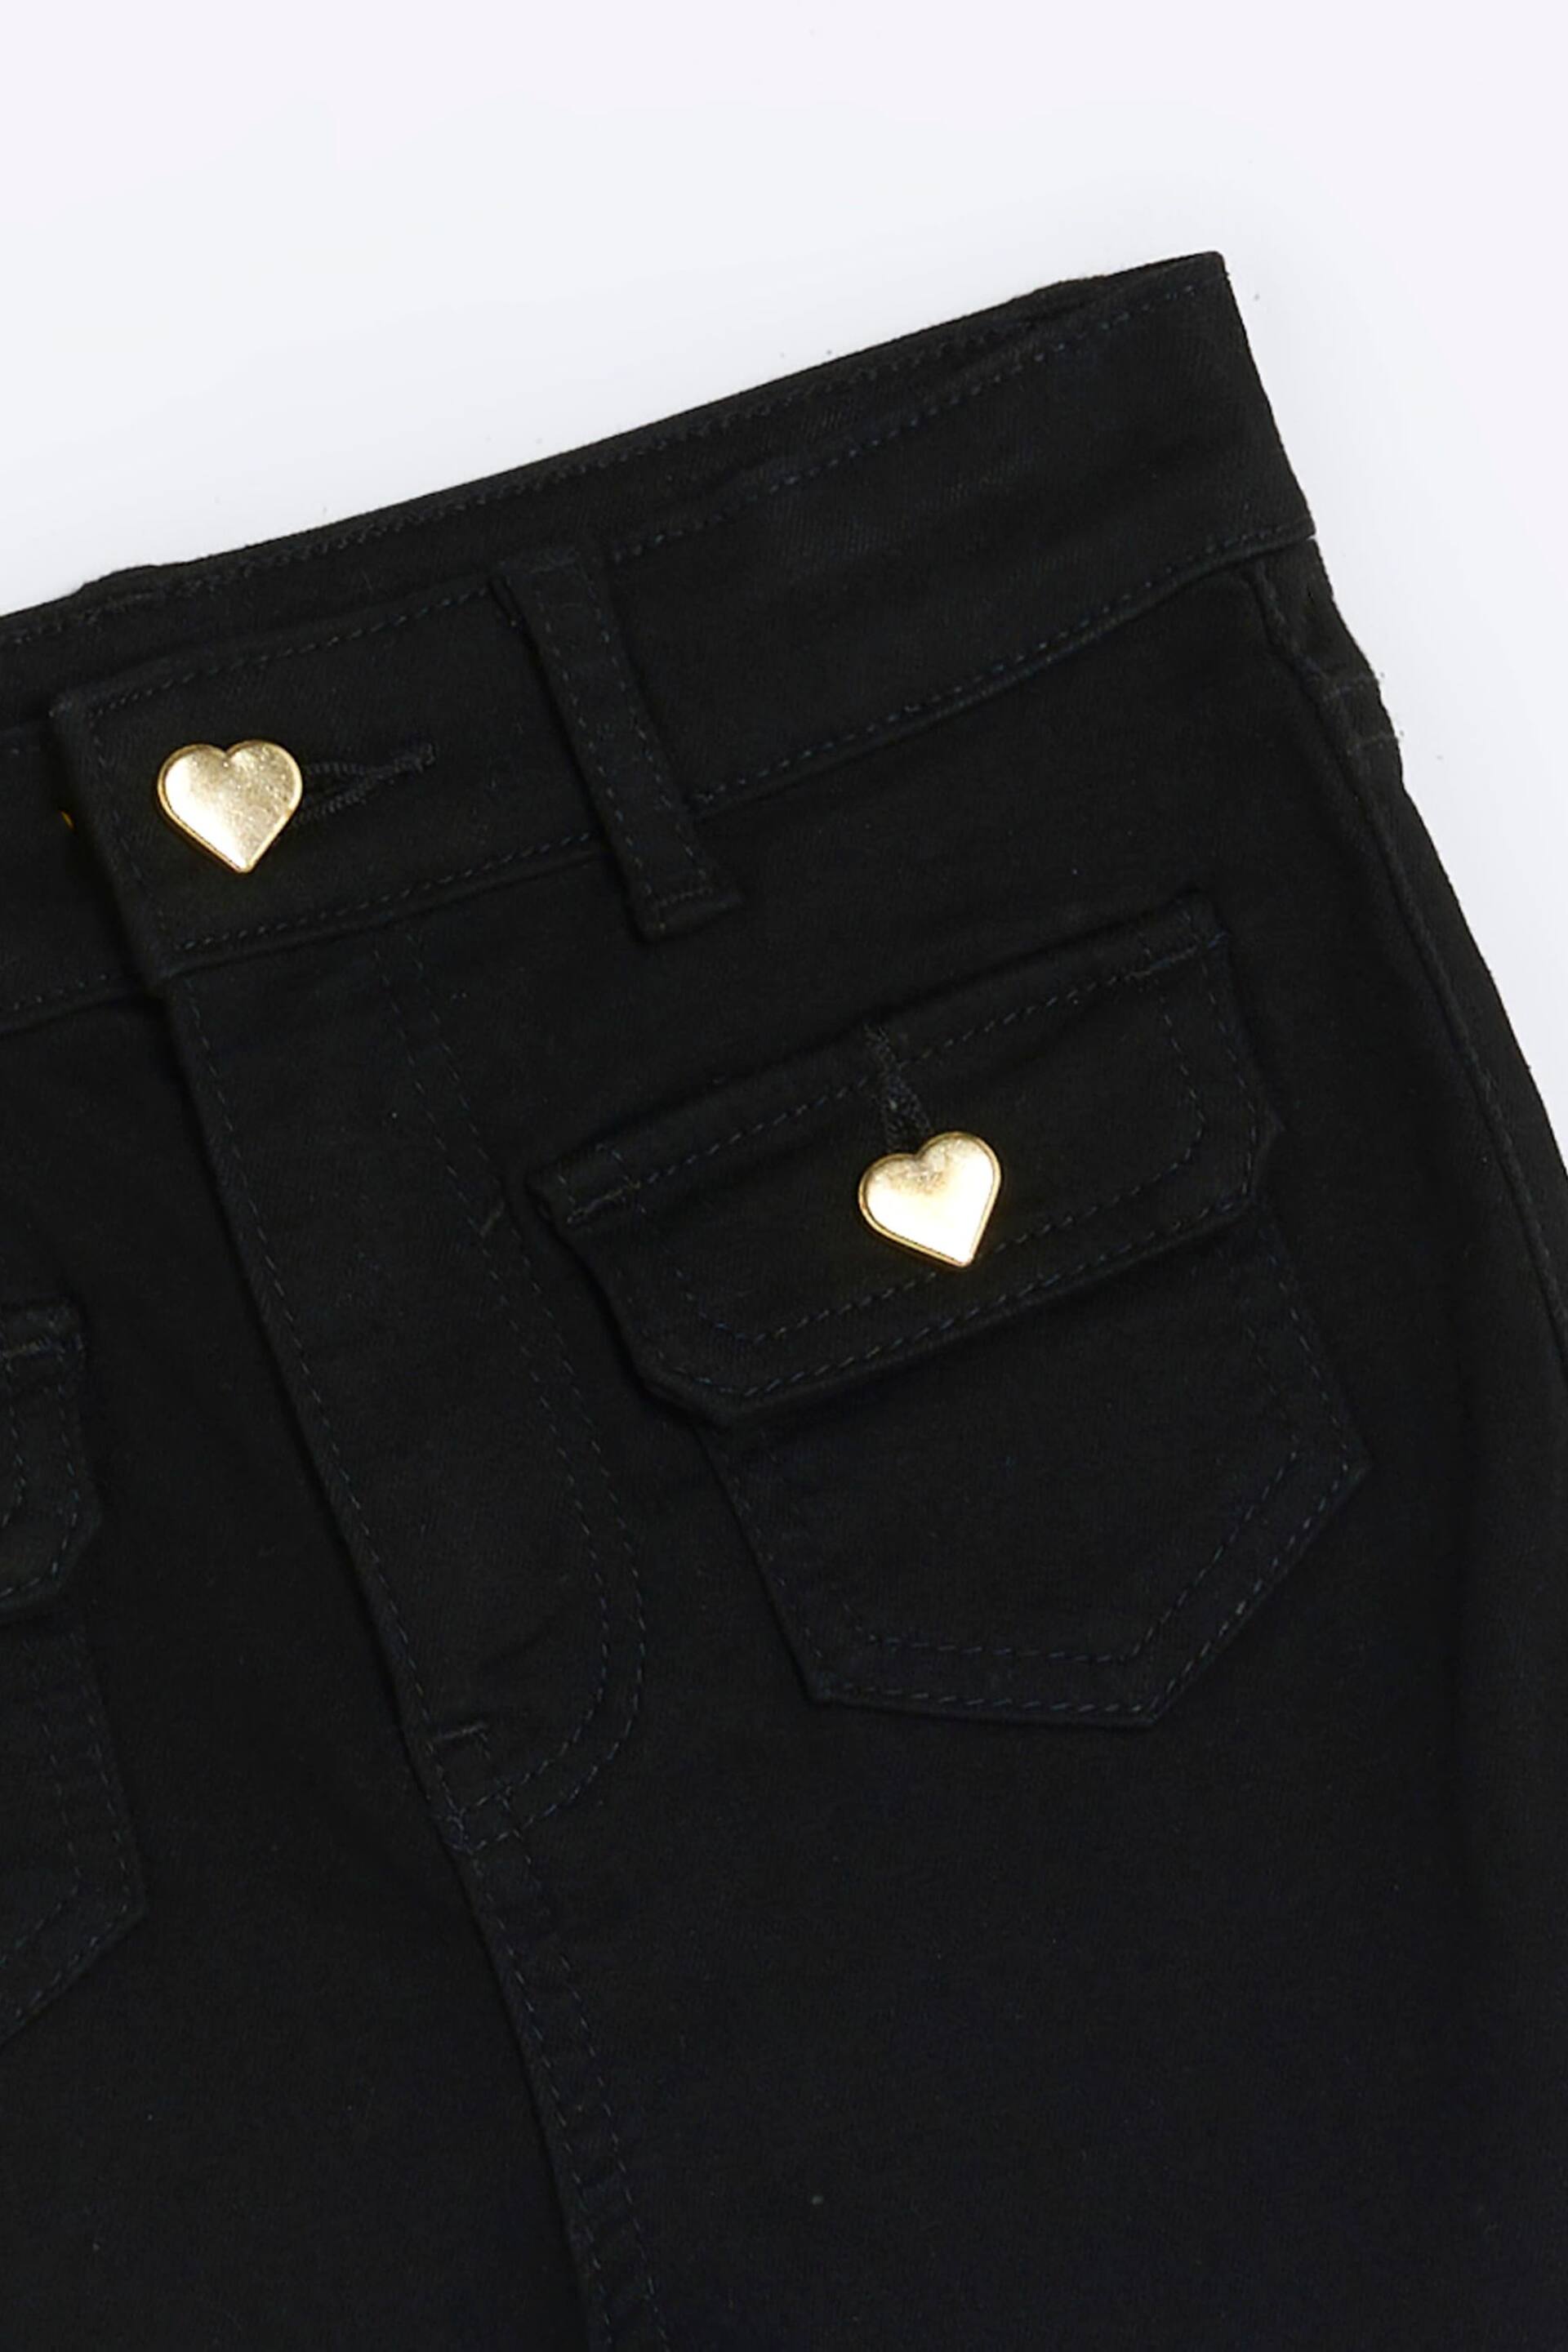 River Island Black Girls Pocket Front Flare Jeans - Image 2 of 3